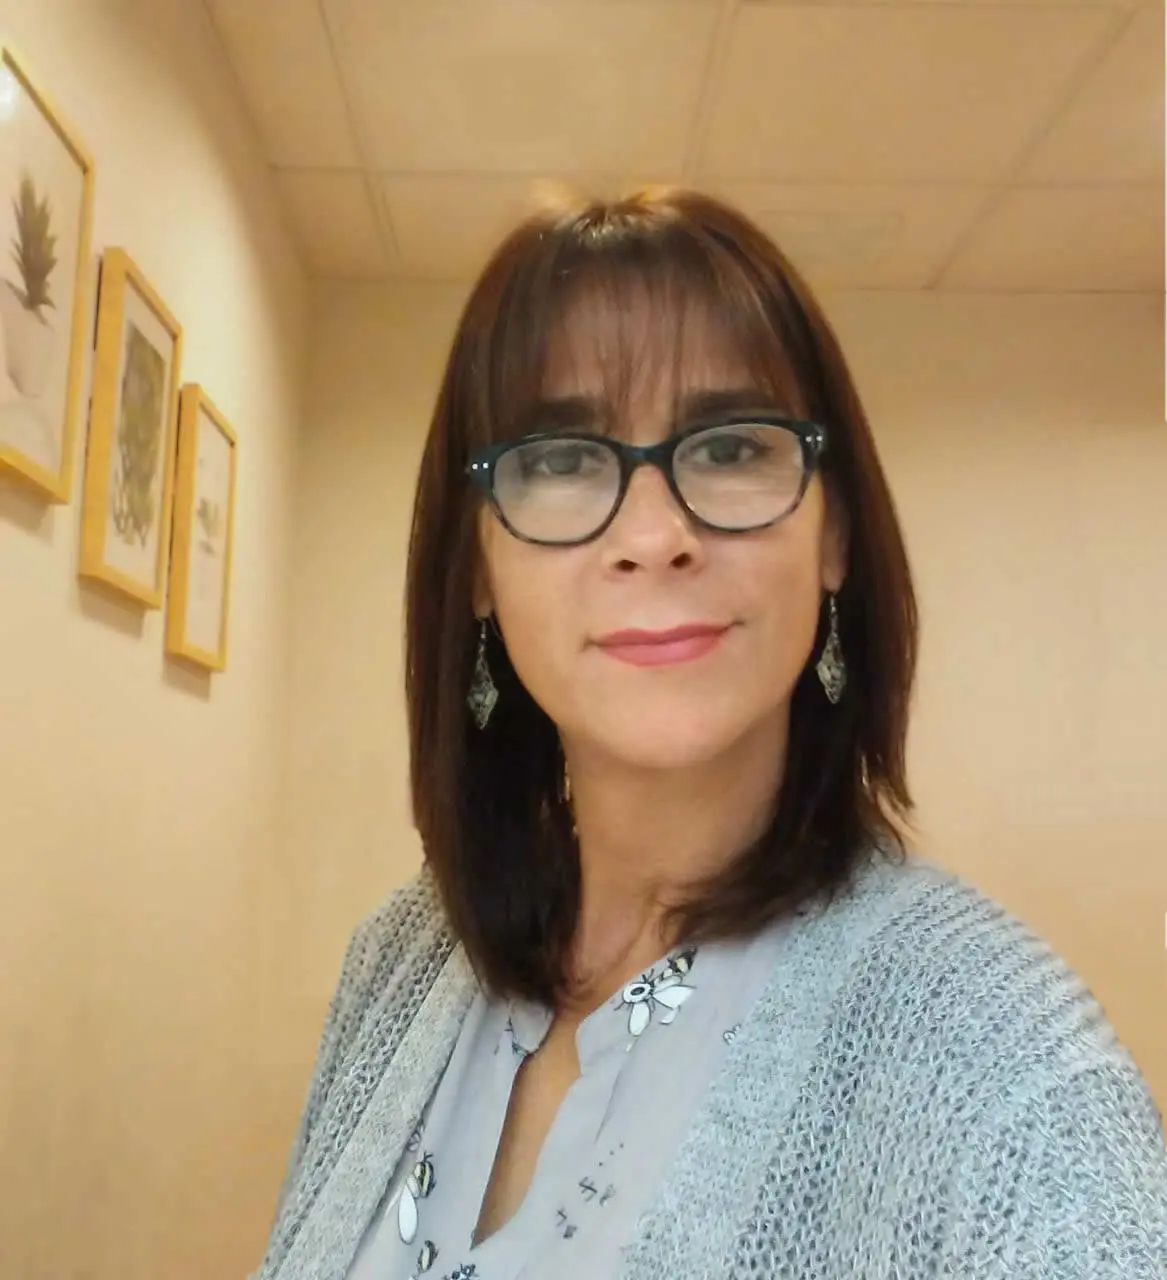 karina bustos psicologa - Quién es Karina Bustos